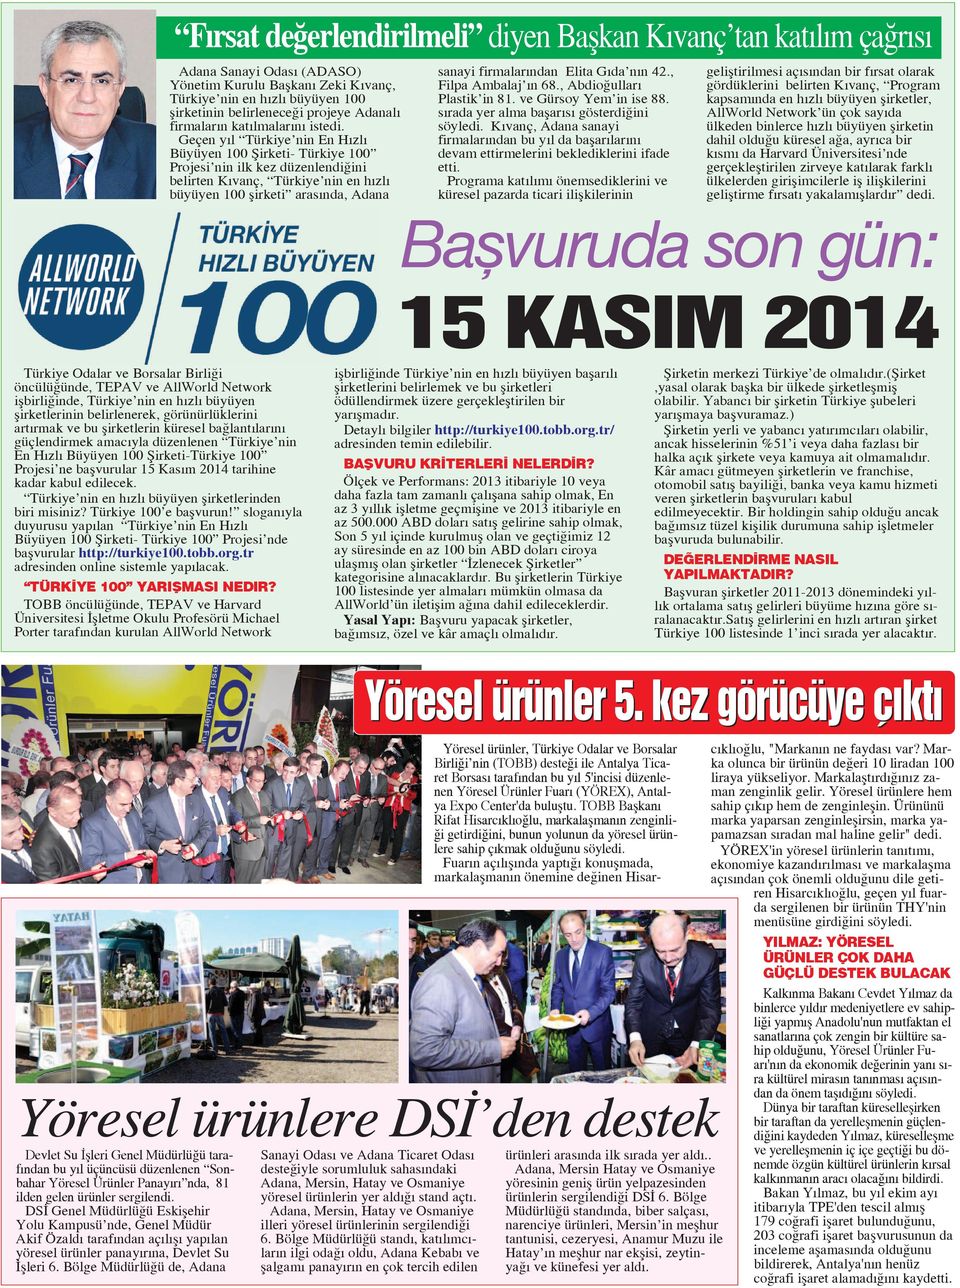 Geçen y l Türkiye nin En H zl Büyüyen 100 fiirketi- Türkiye 100 Projesi nin ilk kez düzenlendi ini belirten K vanç, Türkiye nin en h zl büyüyen 100 flirketi aras nda, Adana sanayi firmalar ndan Elita